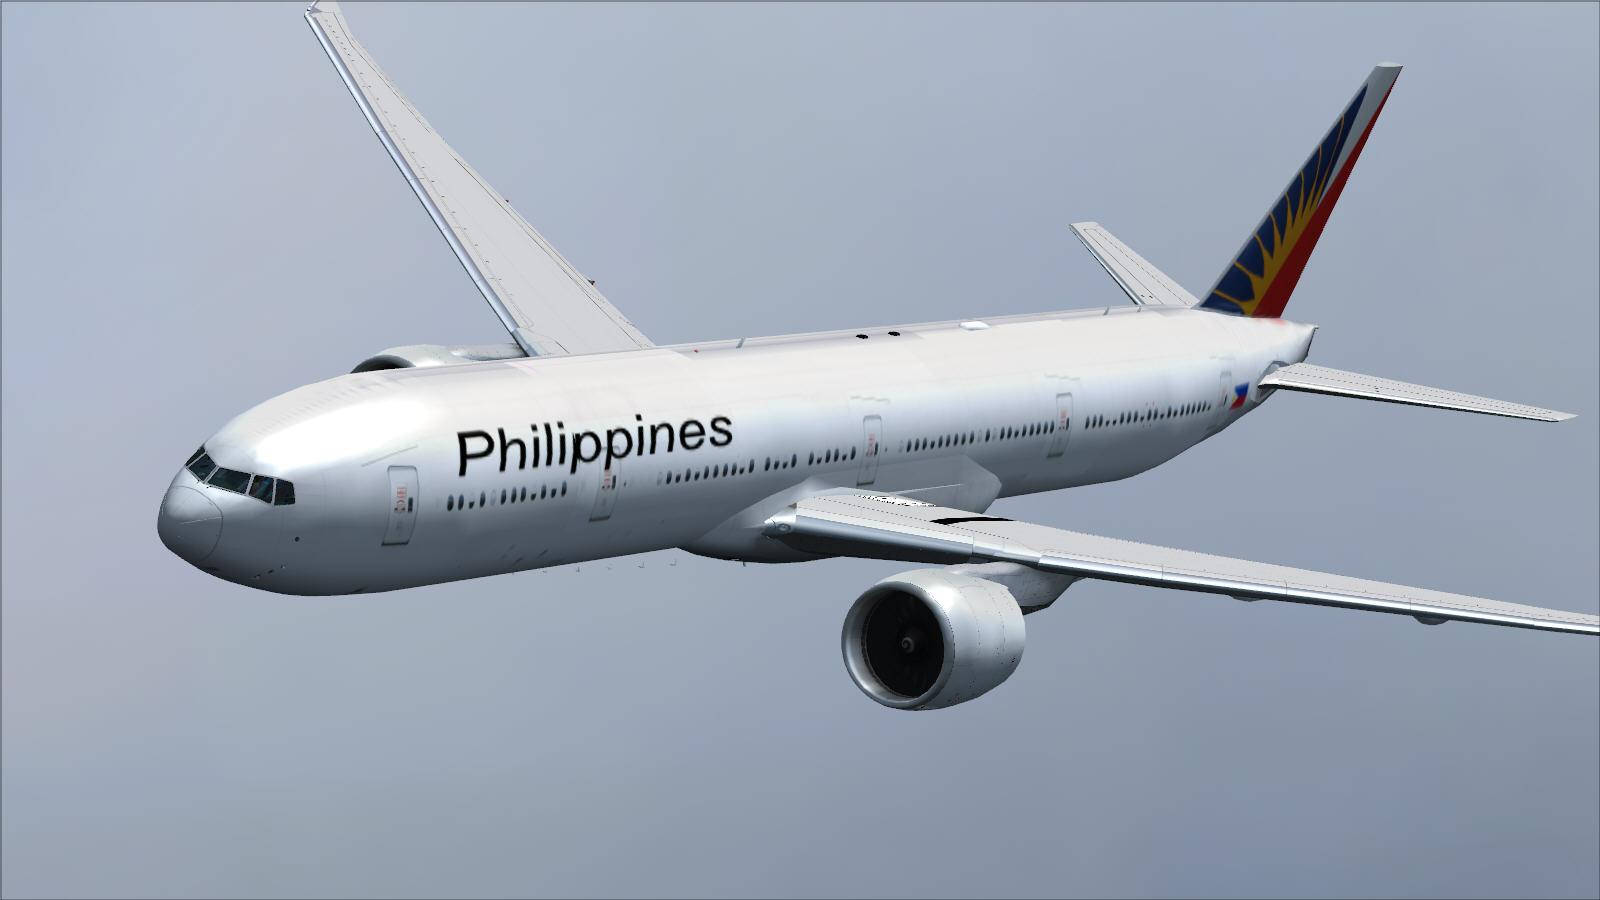 Philippineairlines Weißes Großes Flugzeug In Der Luft. Wallpaper